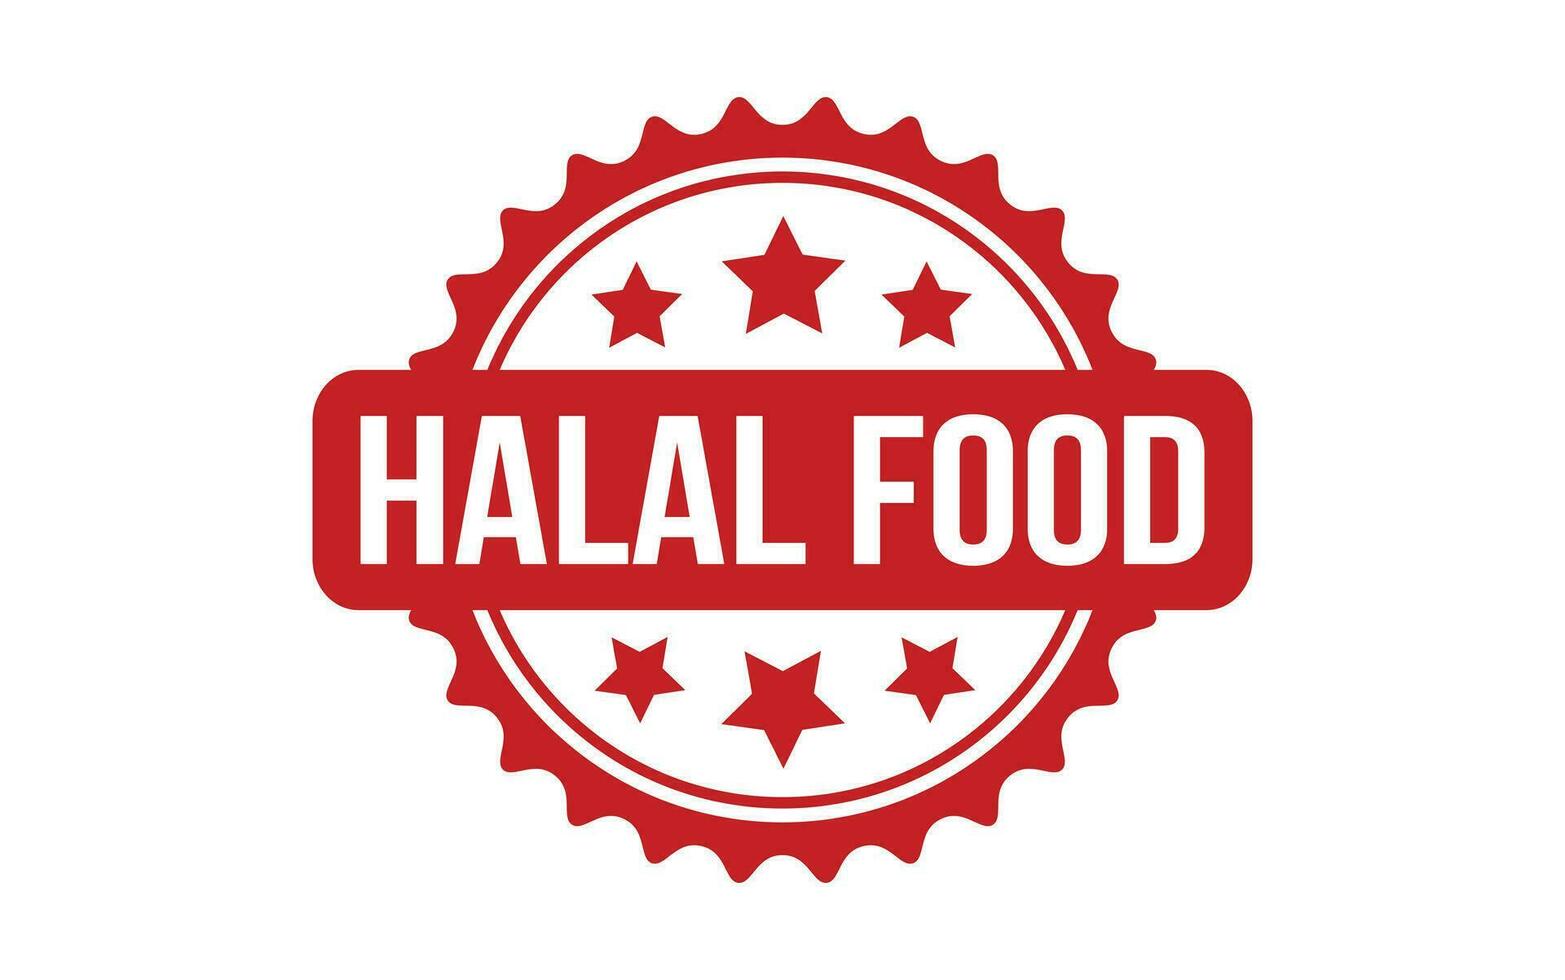 Halal Food rubber grunge stamp seal vector